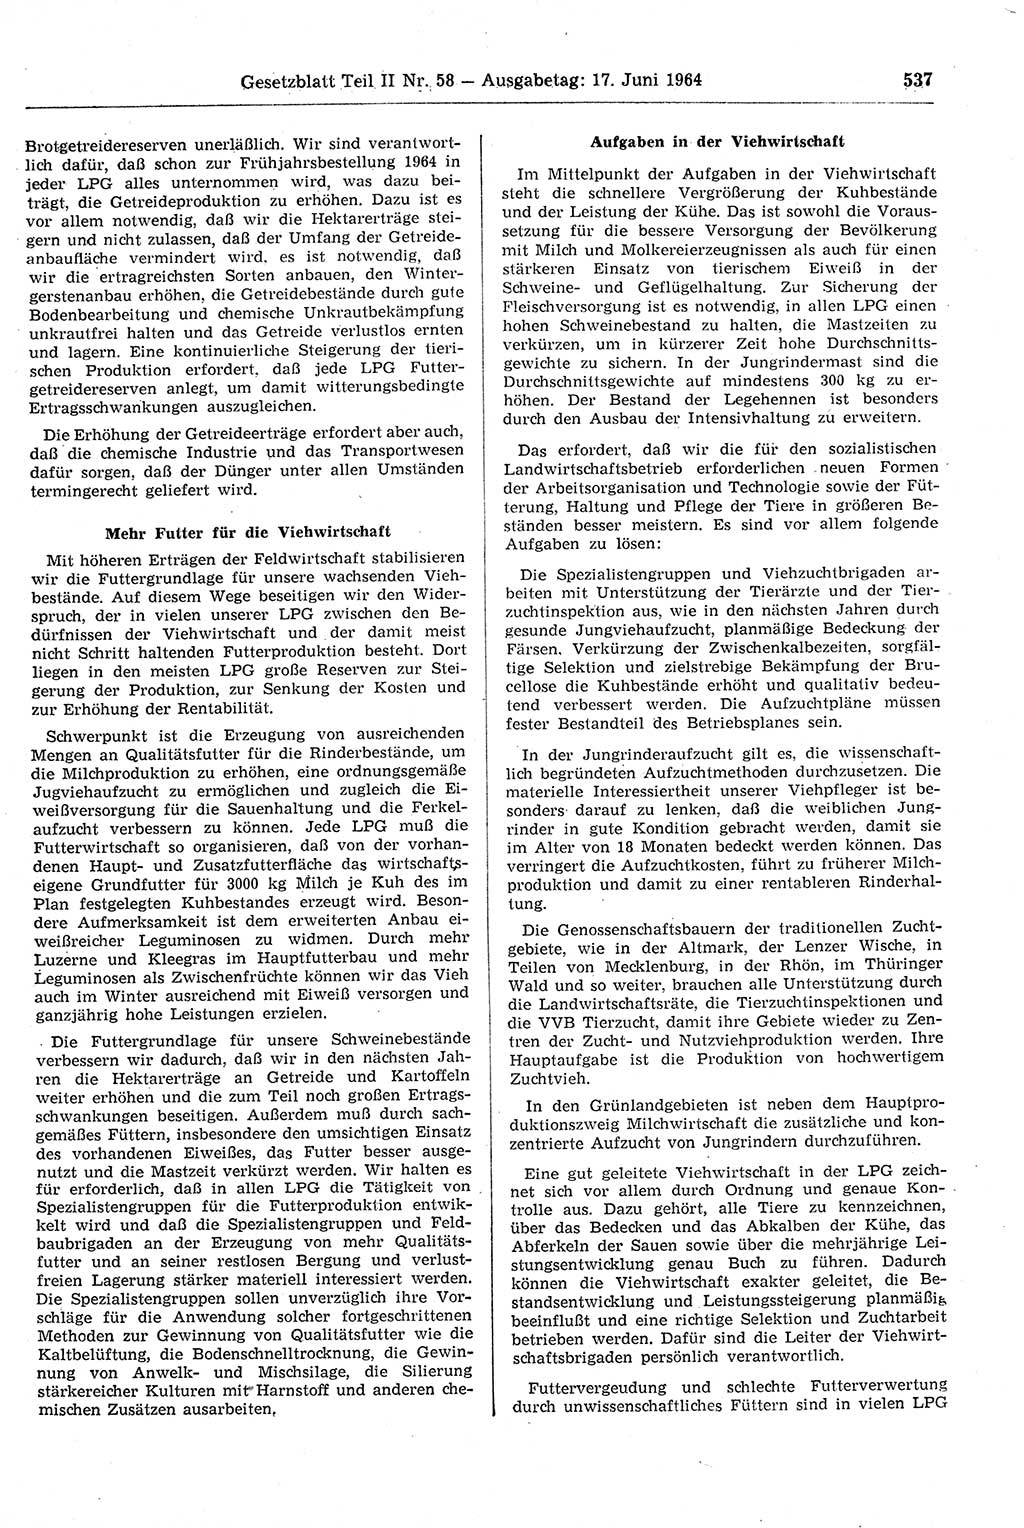 Gesetzblatt (GBl.) der Deutschen Demokratischen Republik (DDR) Teil ⅠⅠ 1964, Seite 537 (GBl. DDR ⅠⅠ 1964, S. 537)